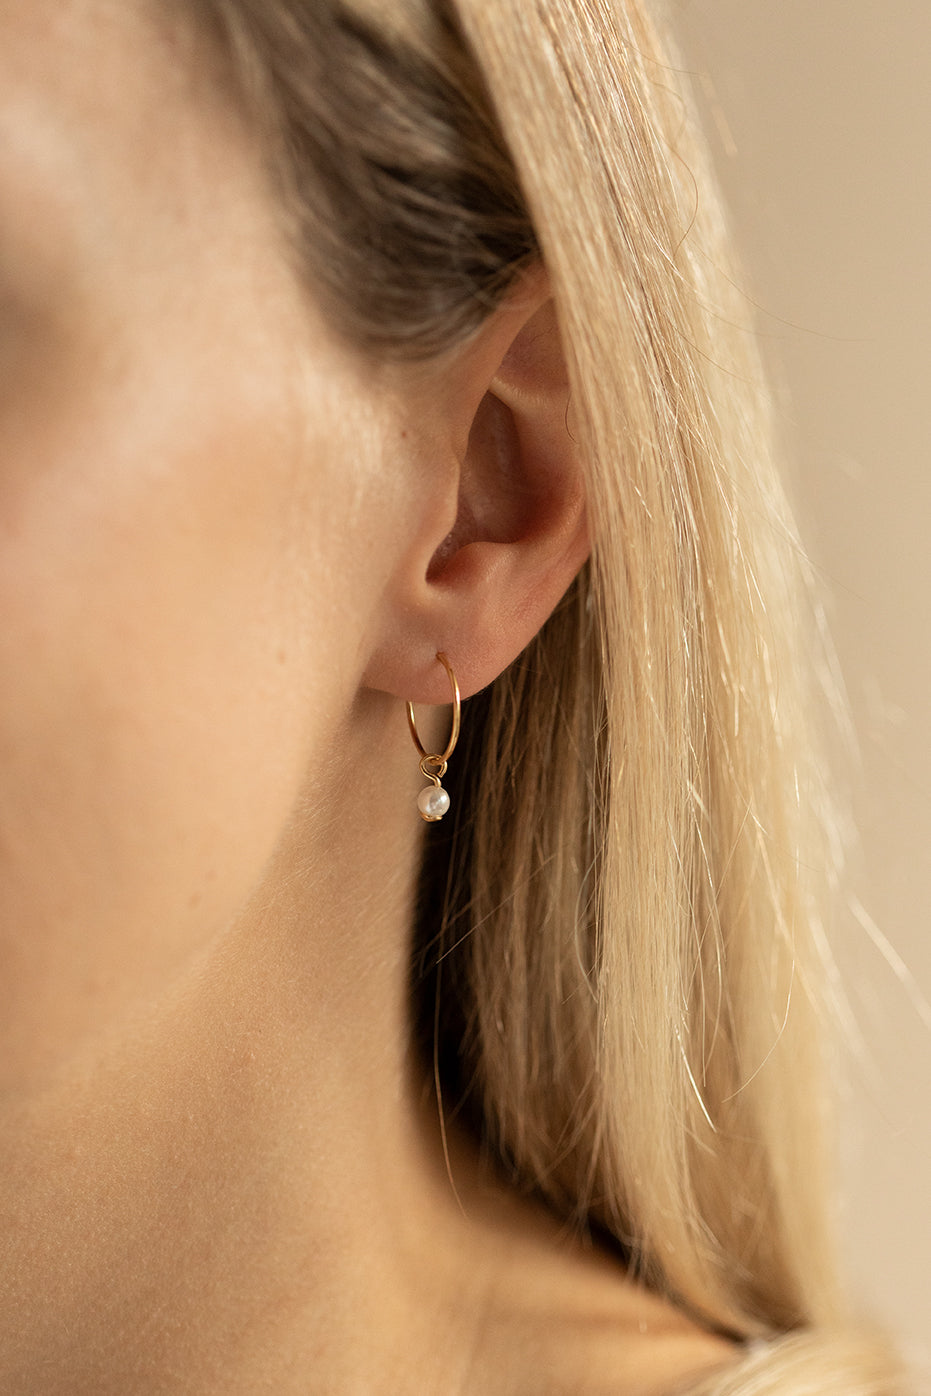 Designer Pearl Earrings - Best Place To Buy Real Pearl Earrings Online